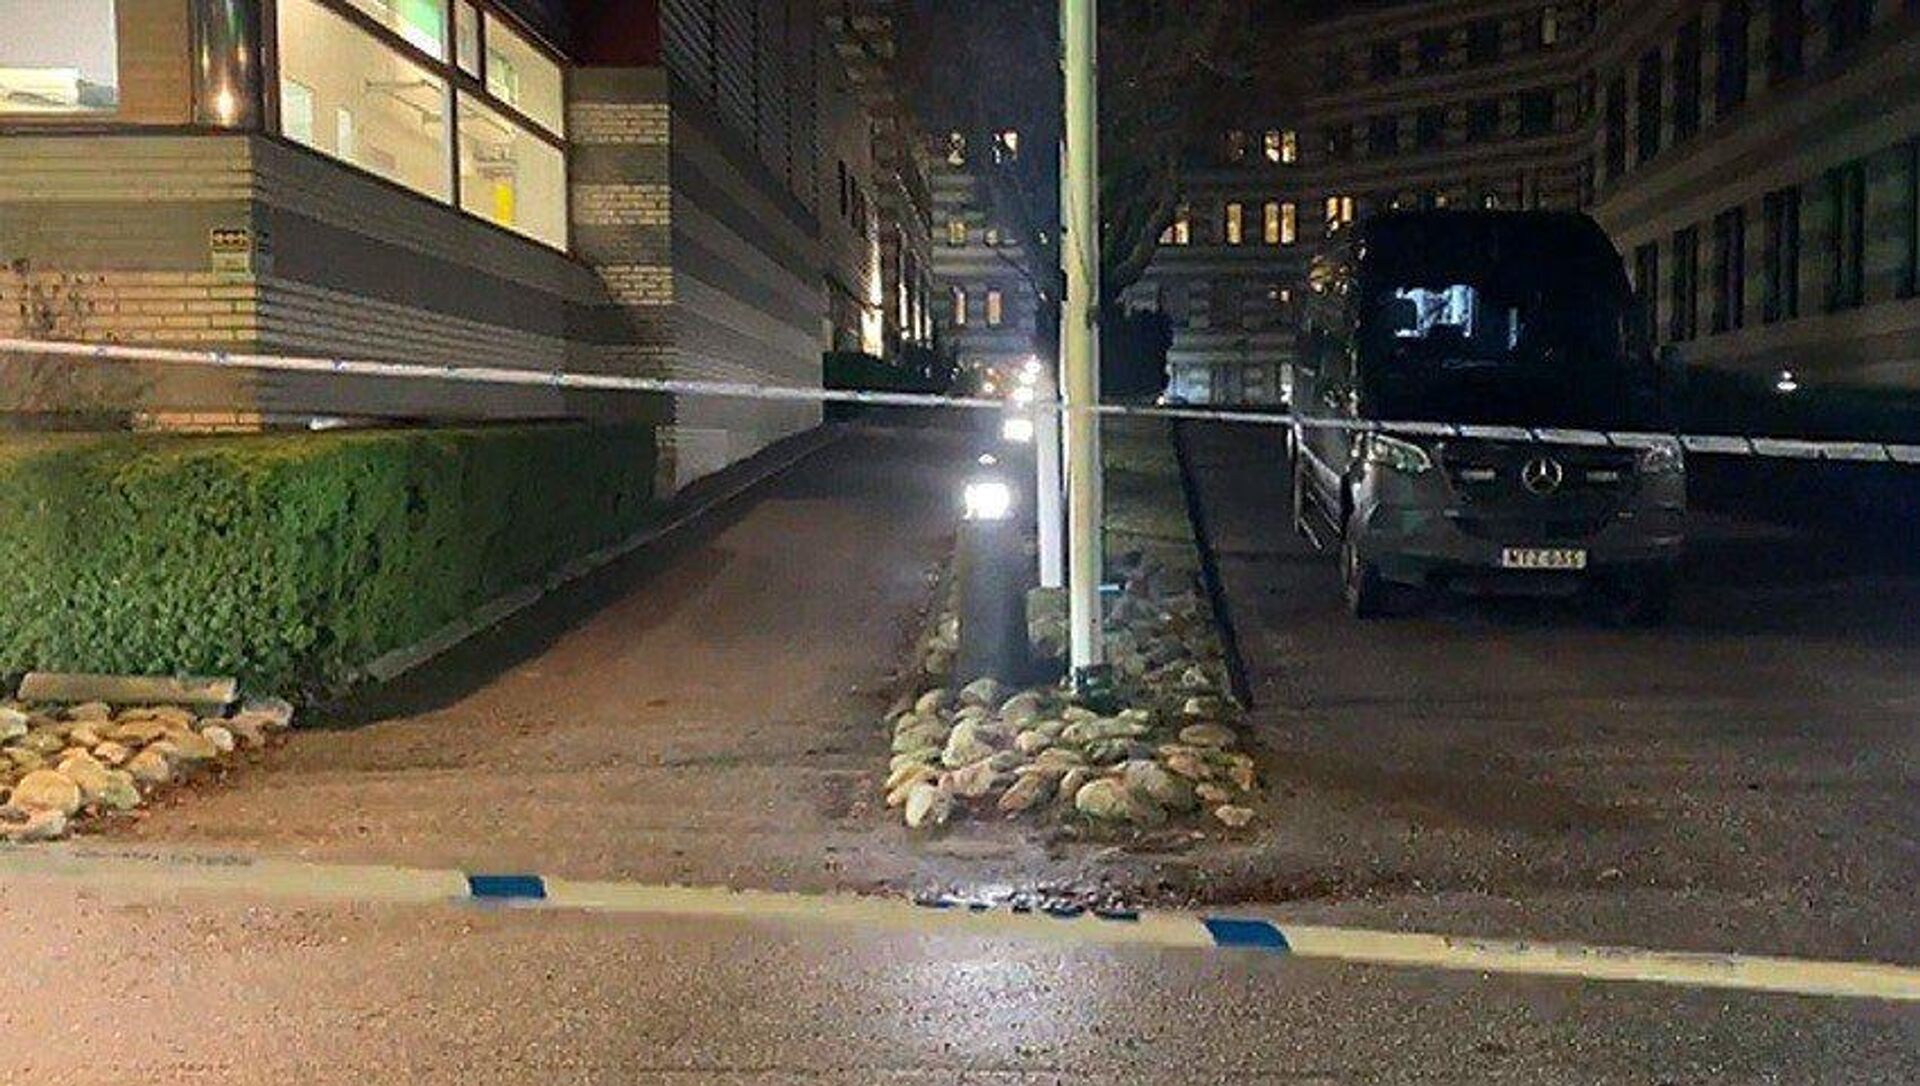 Последствия взрыва в районе улицы Нюторгет в Стокгольме (18 января 2023). Швеция - Sputnik Армения, 1920, 18.01.2023